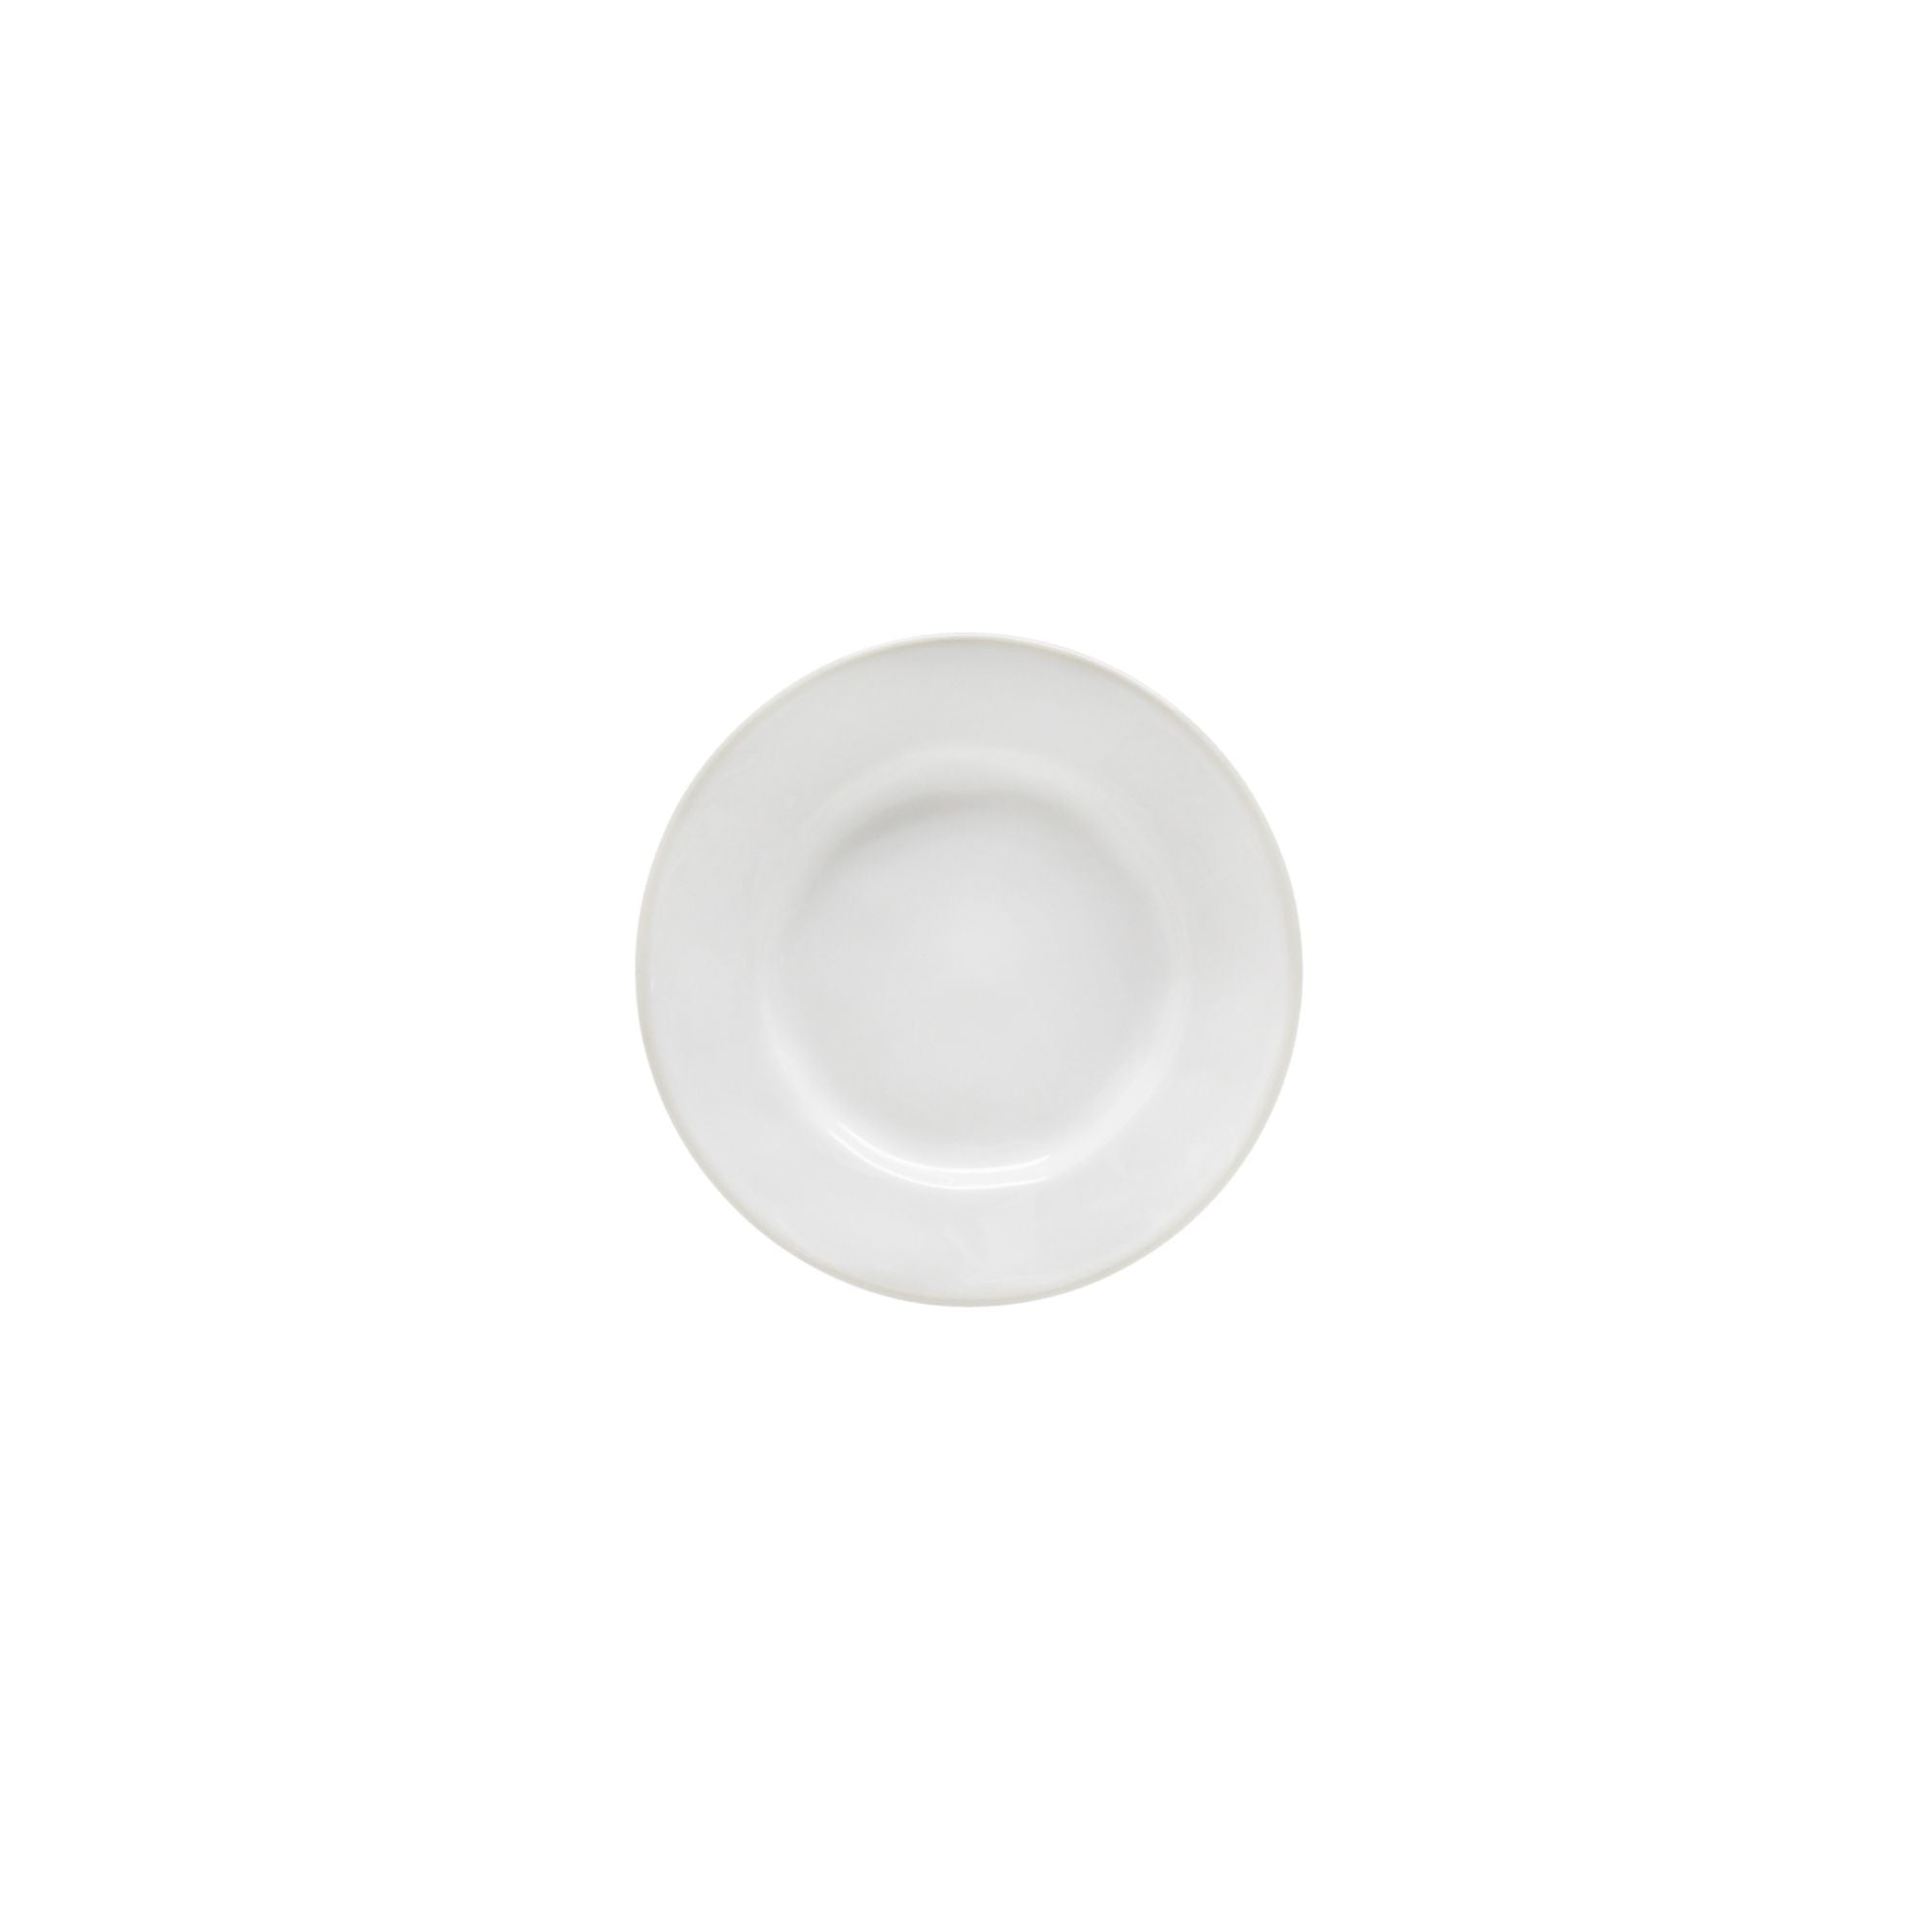 Beja Bread Plate 6" White-Cream